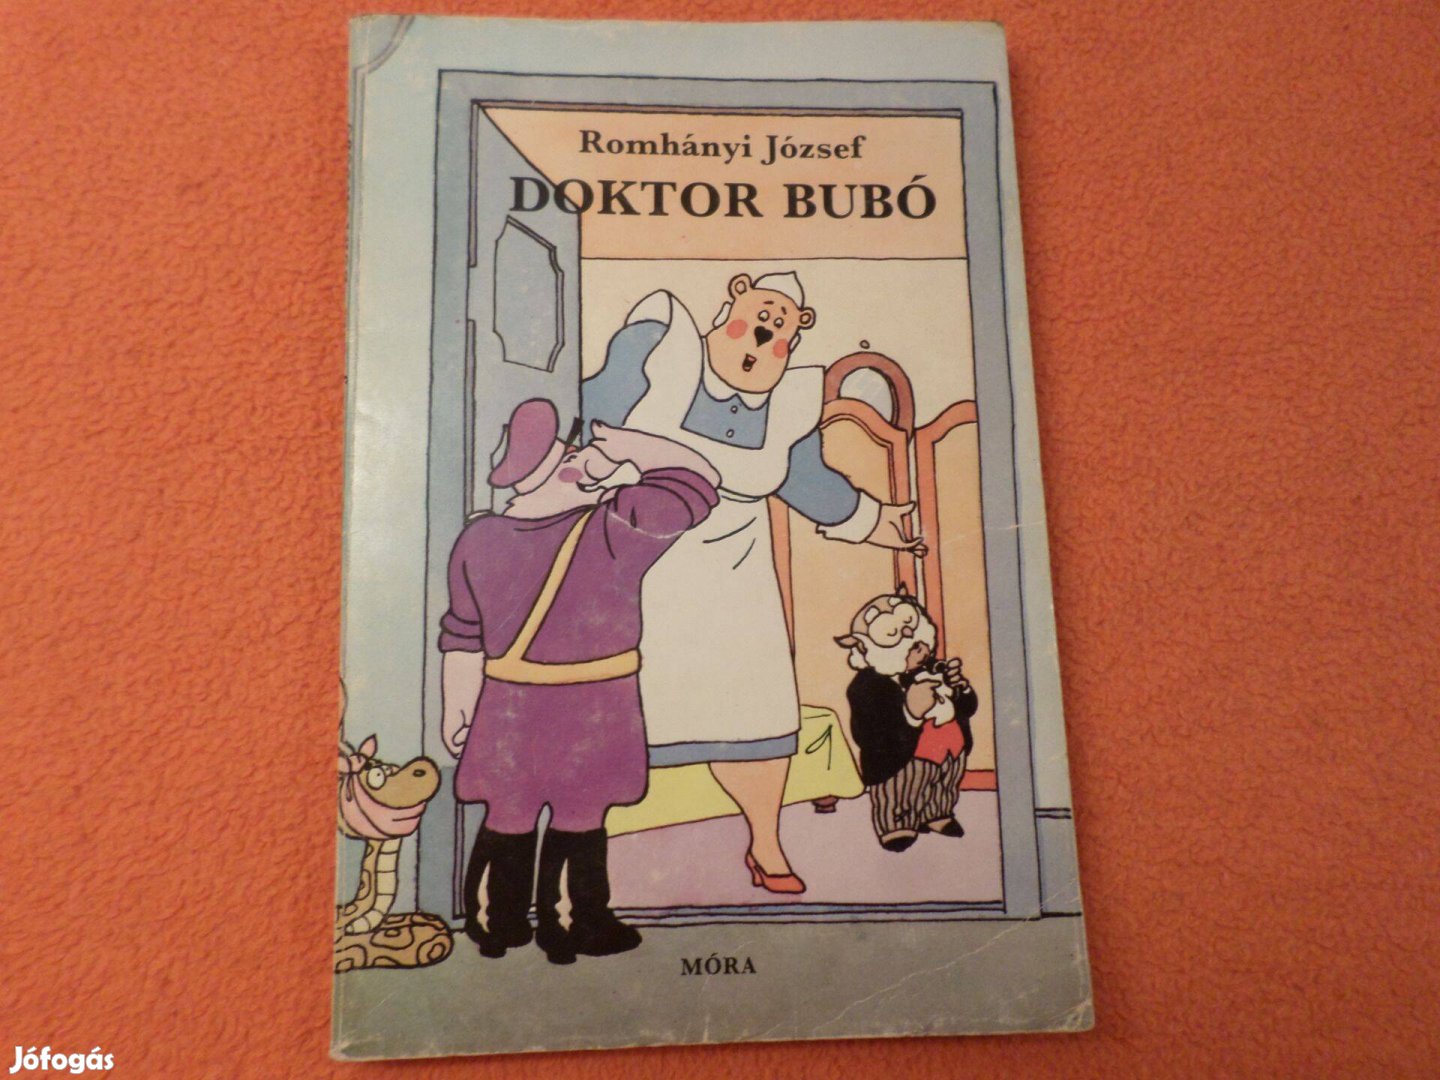 Romhányi József Doktor Bubó, 1981 Retro! Gyermekkönyv, meséskönyv